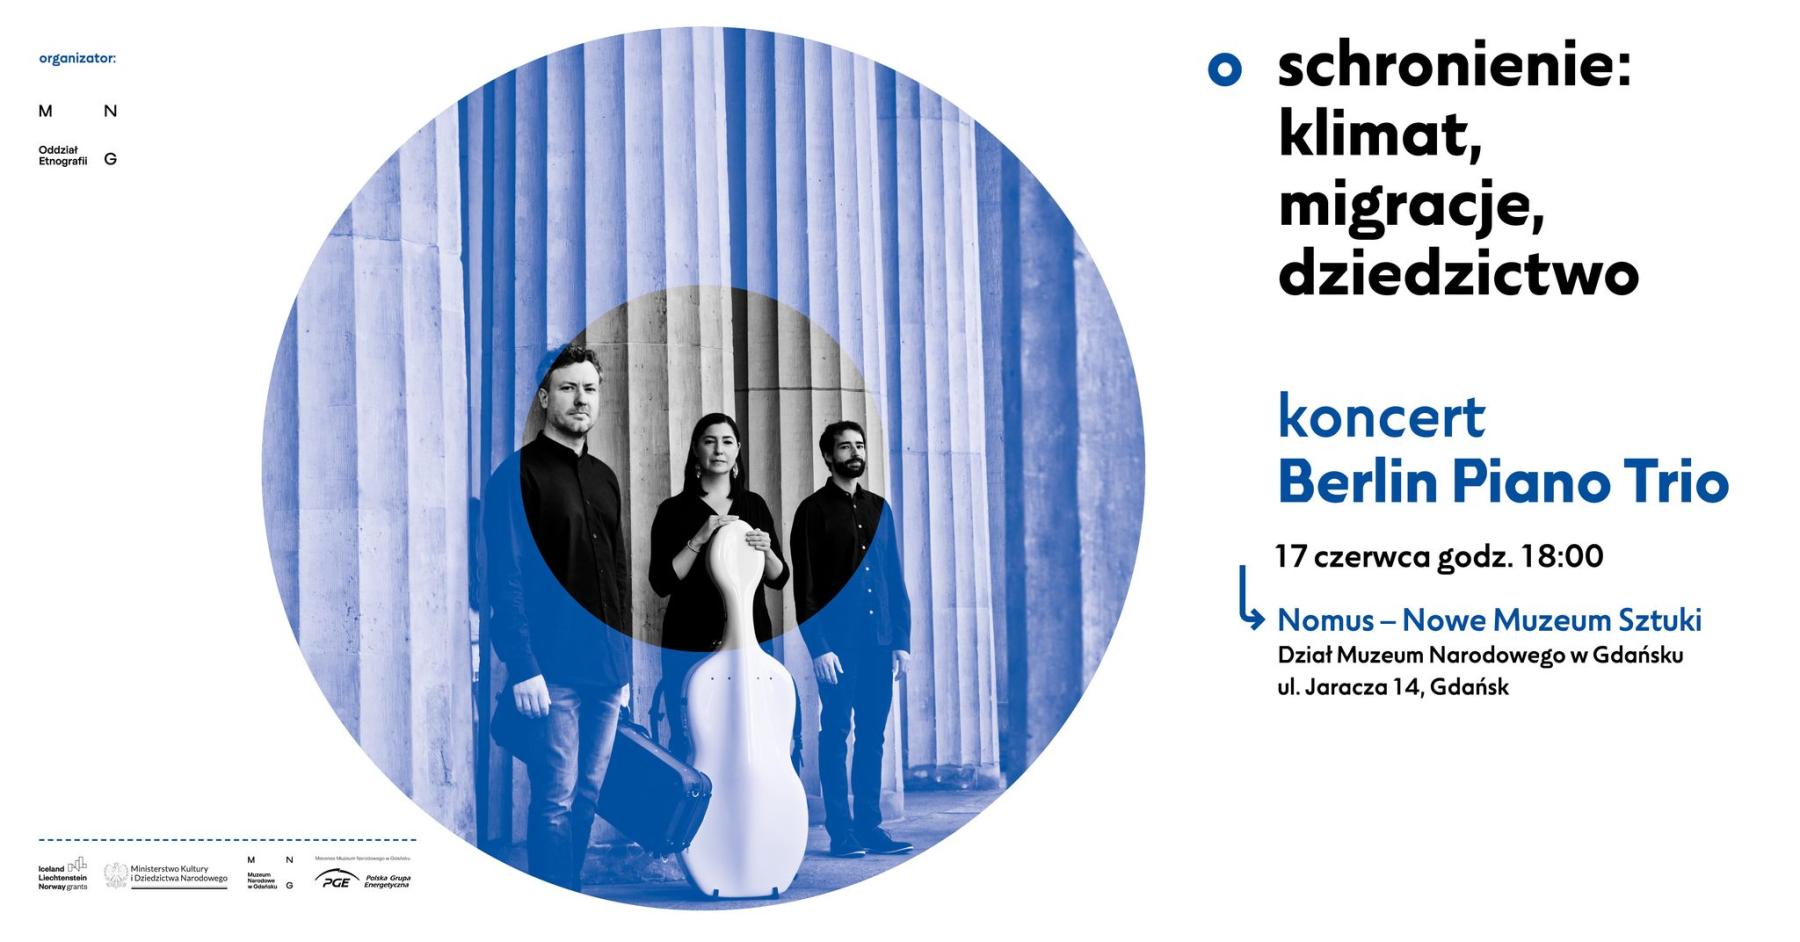 „Schronienie – klimat, migracje, dziedzictwo”, koncernów Berlin Piano Trio, 17 czerwca godz. 18.00